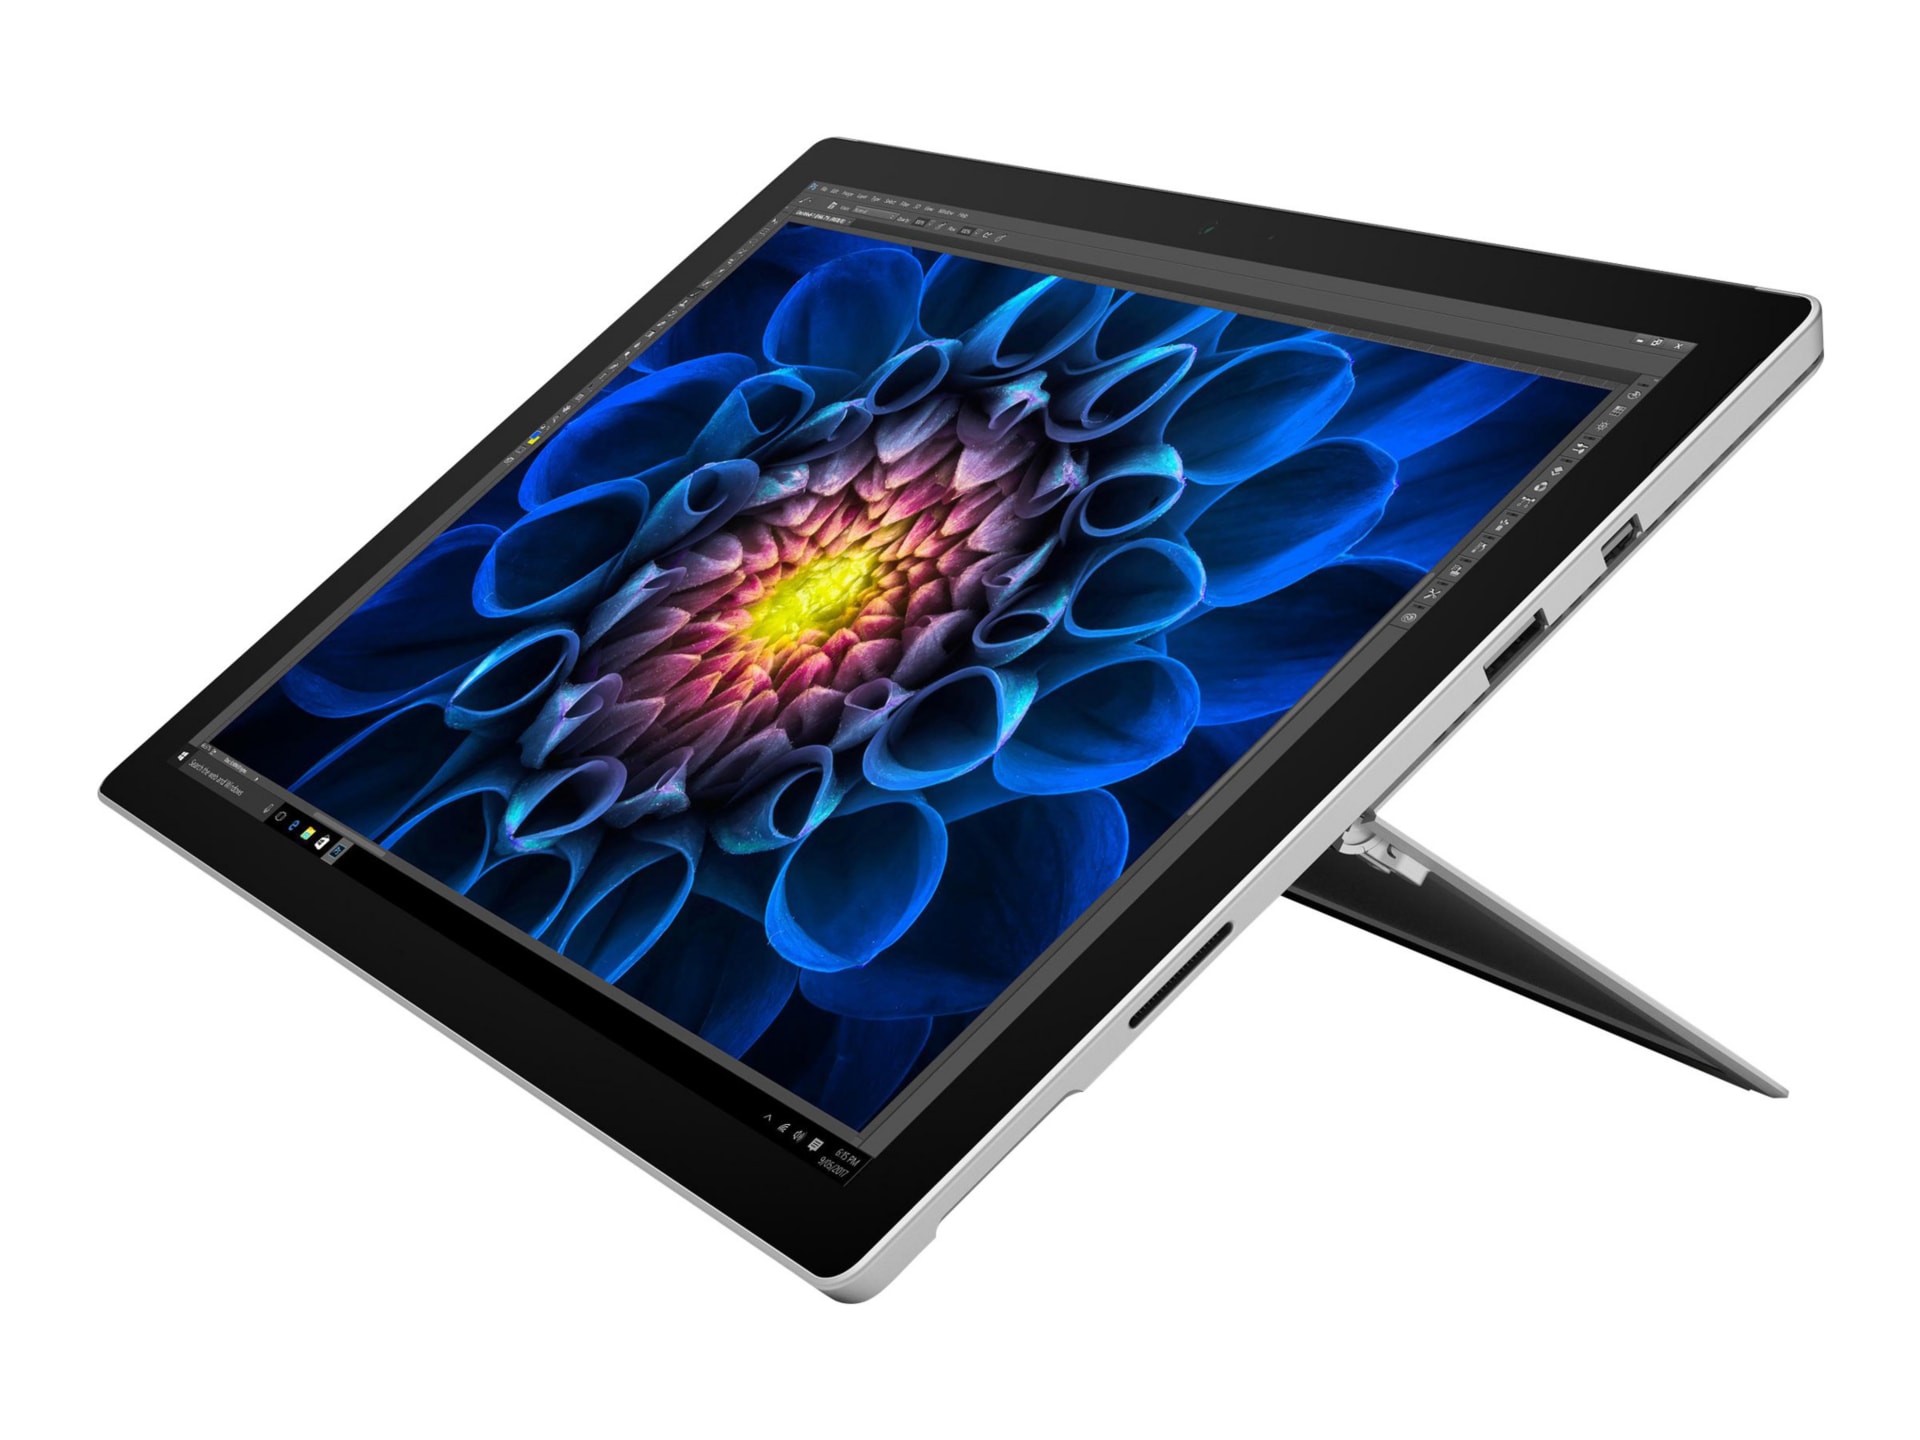 Microsoft Surface Pro 4 - 12.3" - Intel Core i5 - 6300U - 4 GB